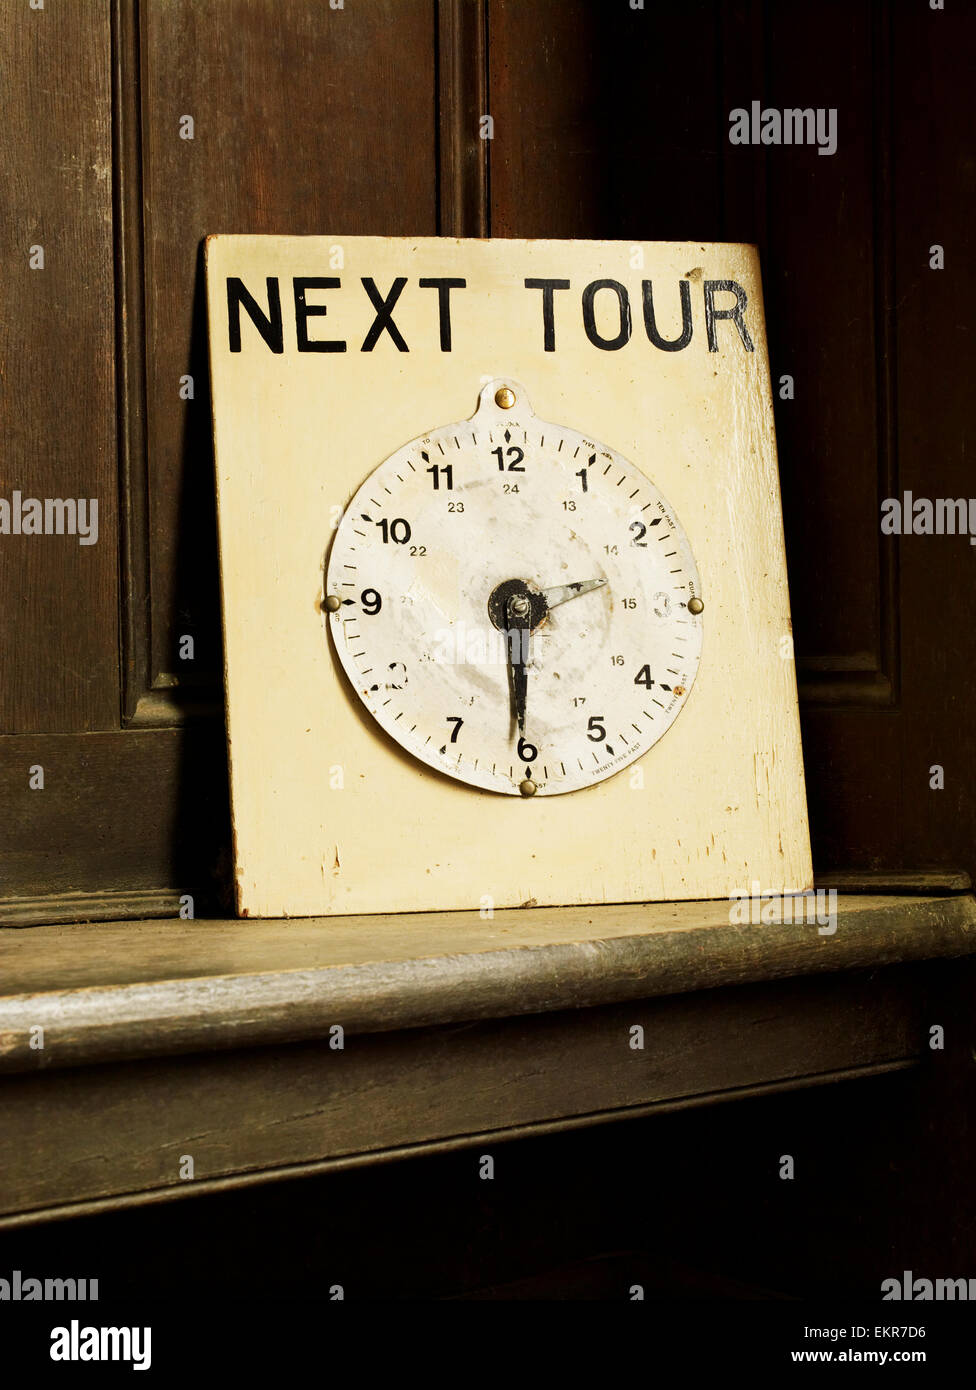 Une horloge sur une carte avec les mains à l'heure 14h30 indiquant la prochaine visite guidée d'une maison. Banque D'Images